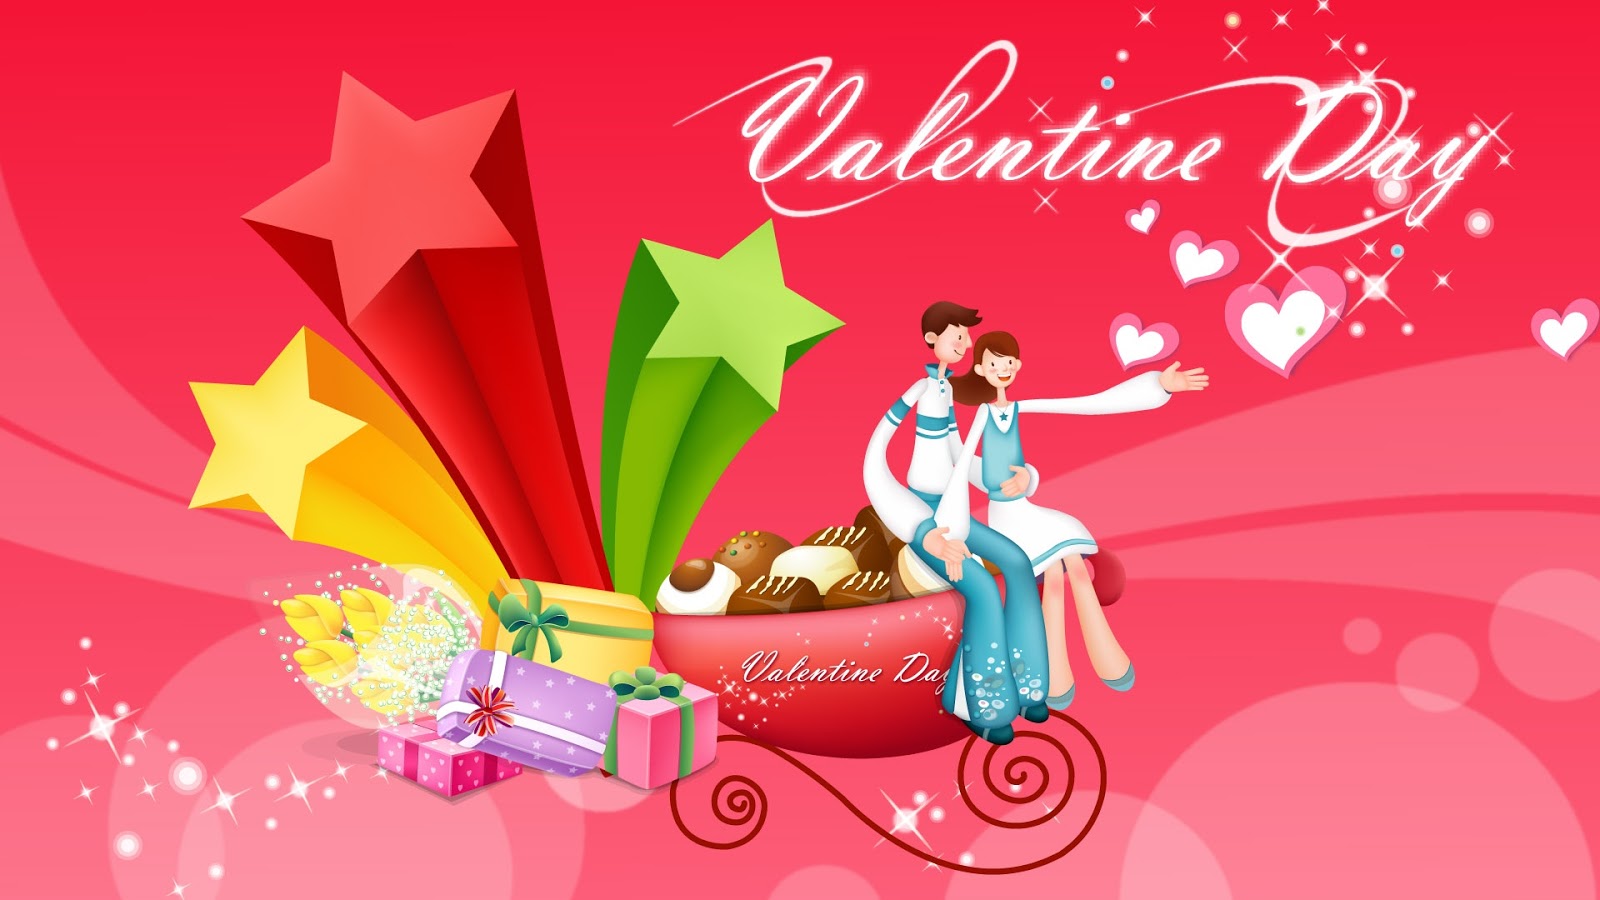 Valentines Day Desktop Wallpaper Which Is Under The